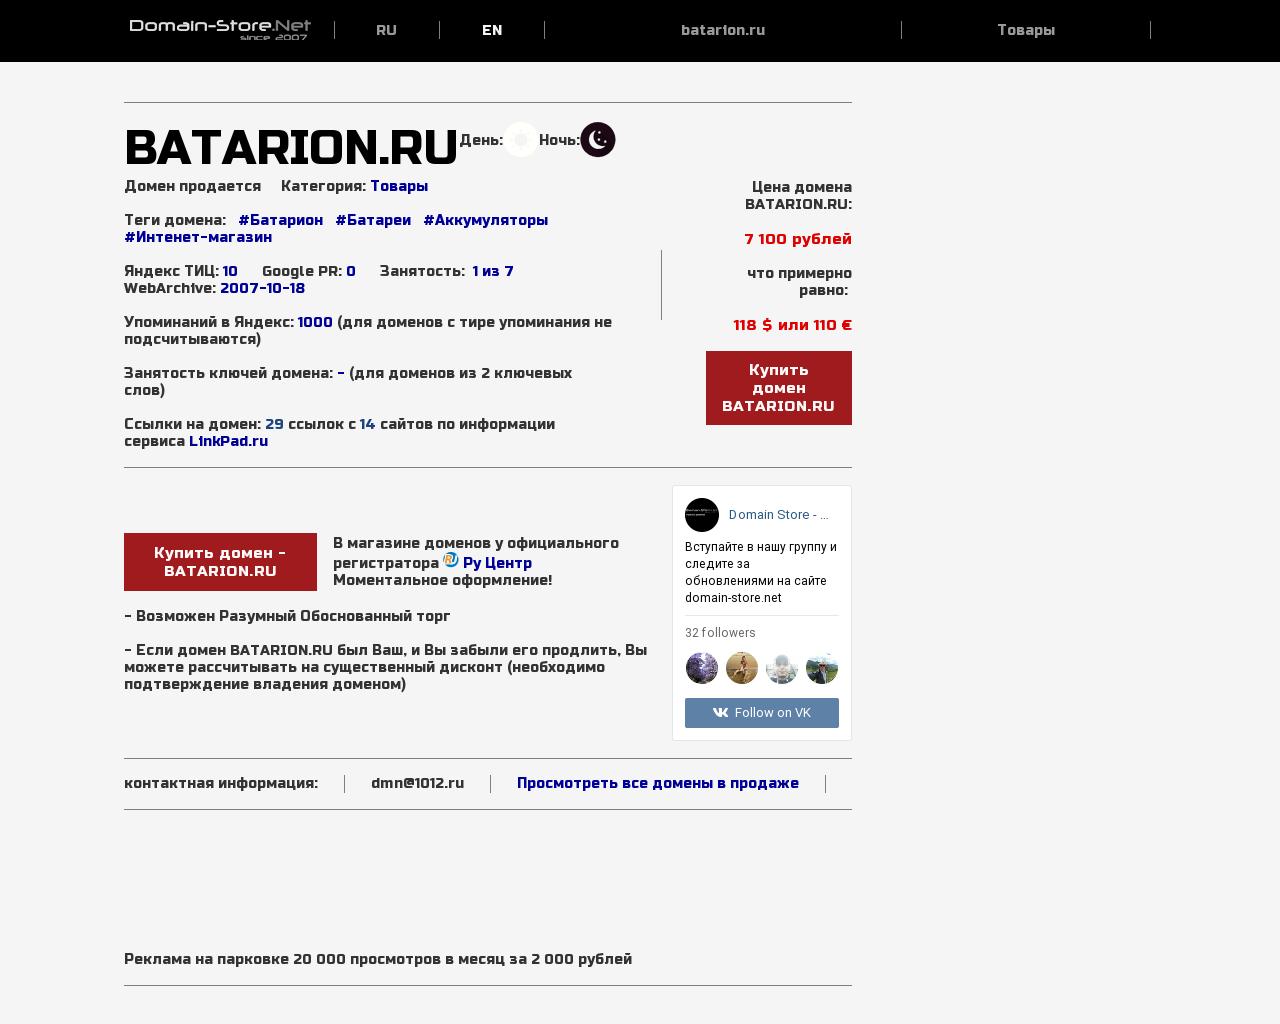 Изображение сайта batarion.ru в разрешении 1280x1024